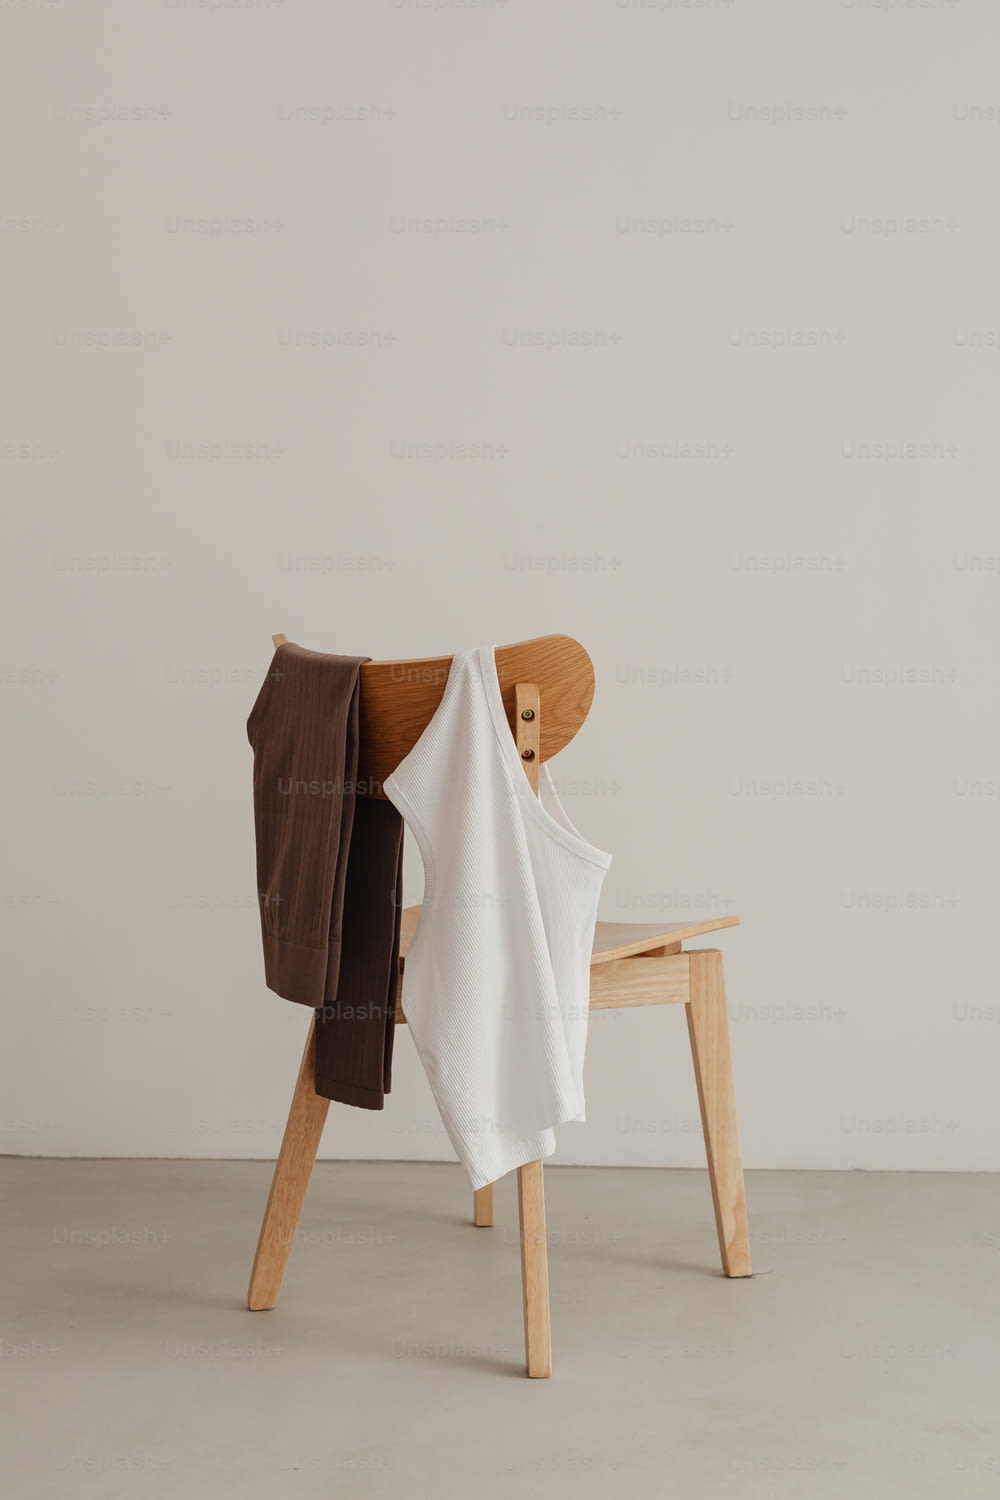 una sedia di legno con una camicia bianca su di essa